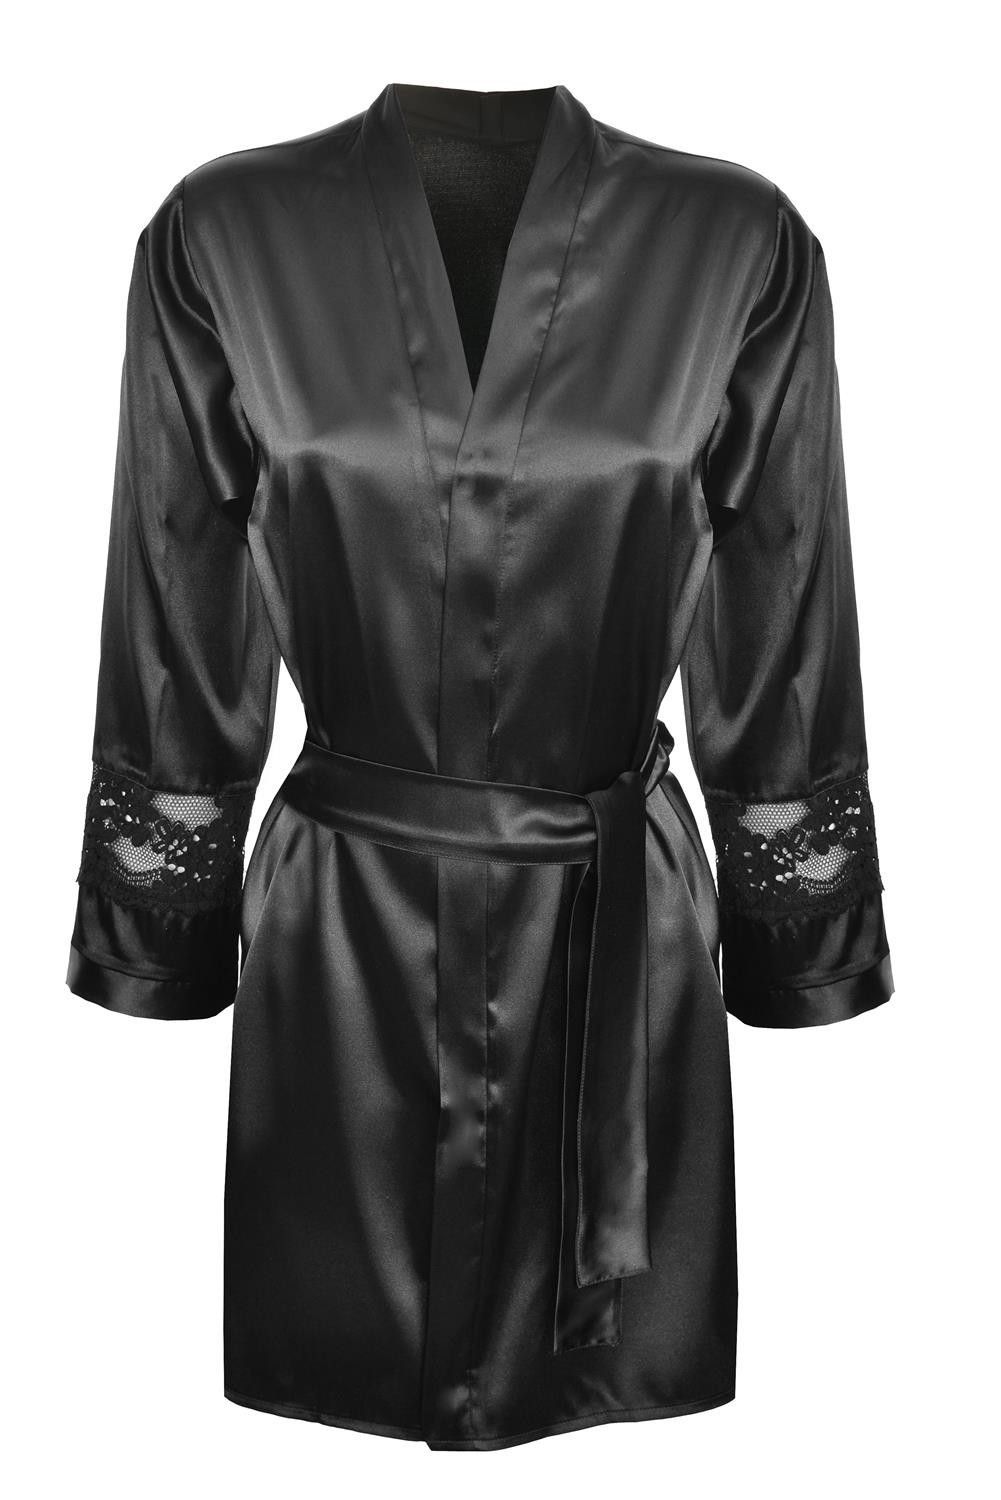 DKaren Housecoat Betty Black XL černá